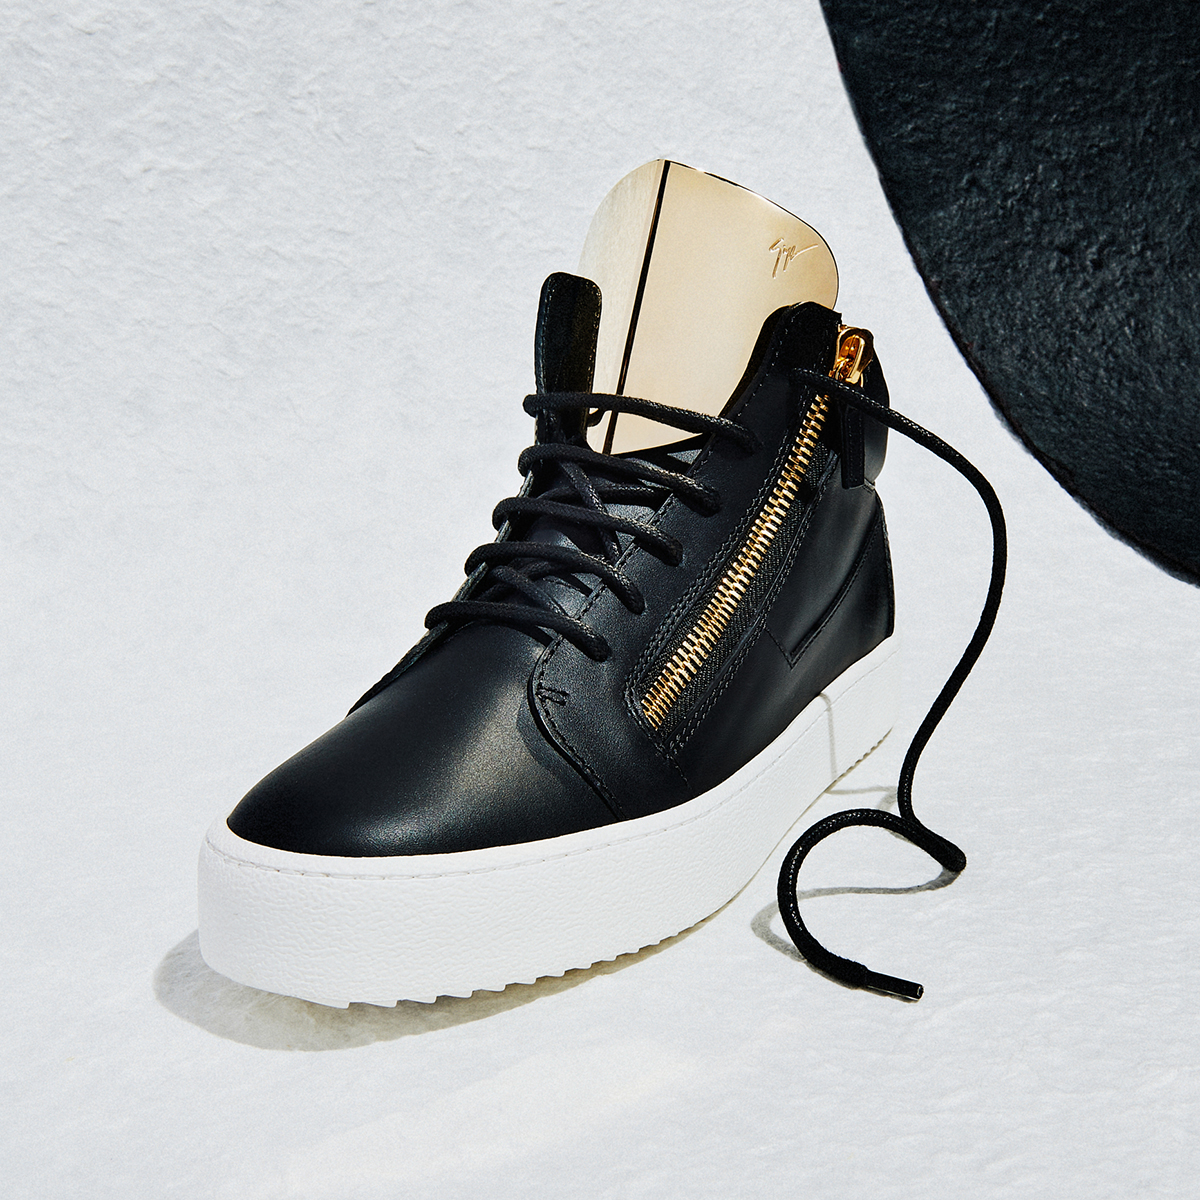 Støvet Donau krybdyr Giuseppe Zanotti® Outlet: Italian Designer Shoes Online